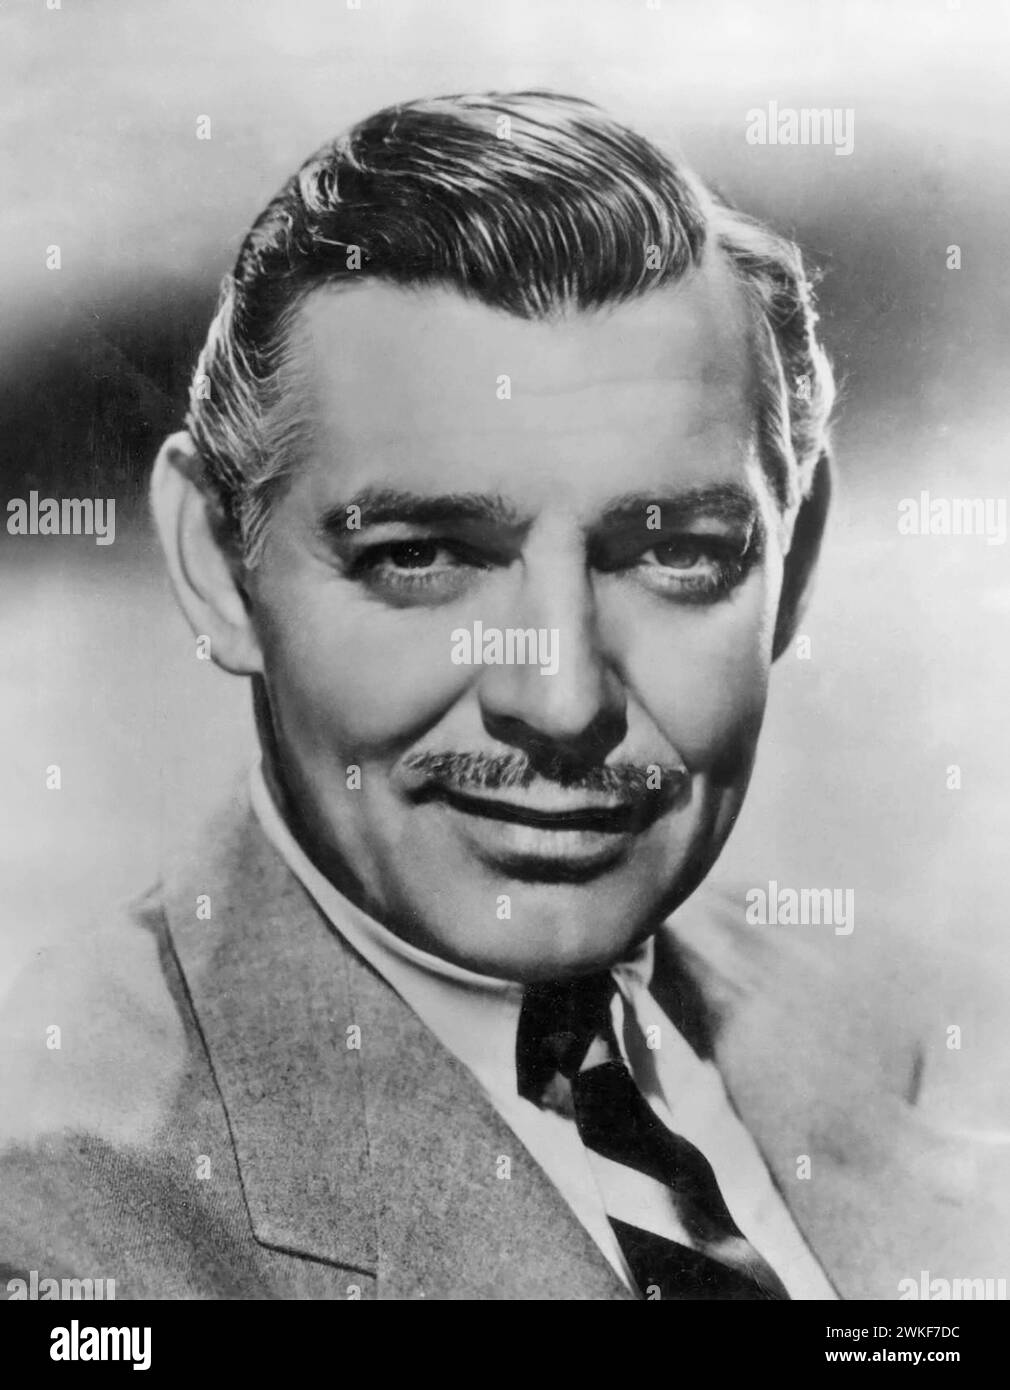 Clark Gable. Portrait de l'acteur américain William Clark Gable (1901-1960), photo publicitaire, 1940 Banque D'Images